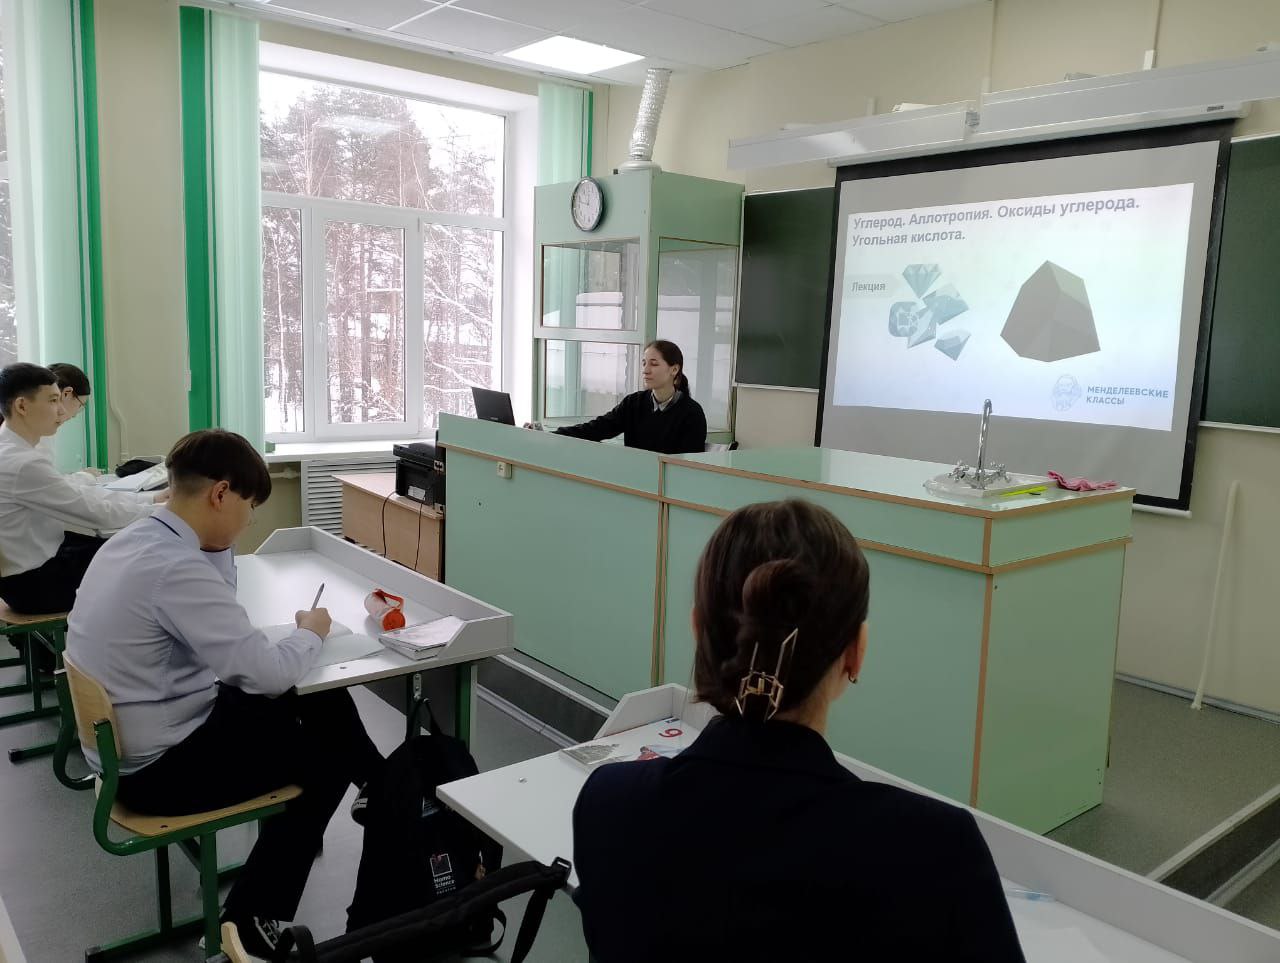 Преподаватель проекта «Менделеевские классы» провела занятия для учеников школы пгт. Мирный 